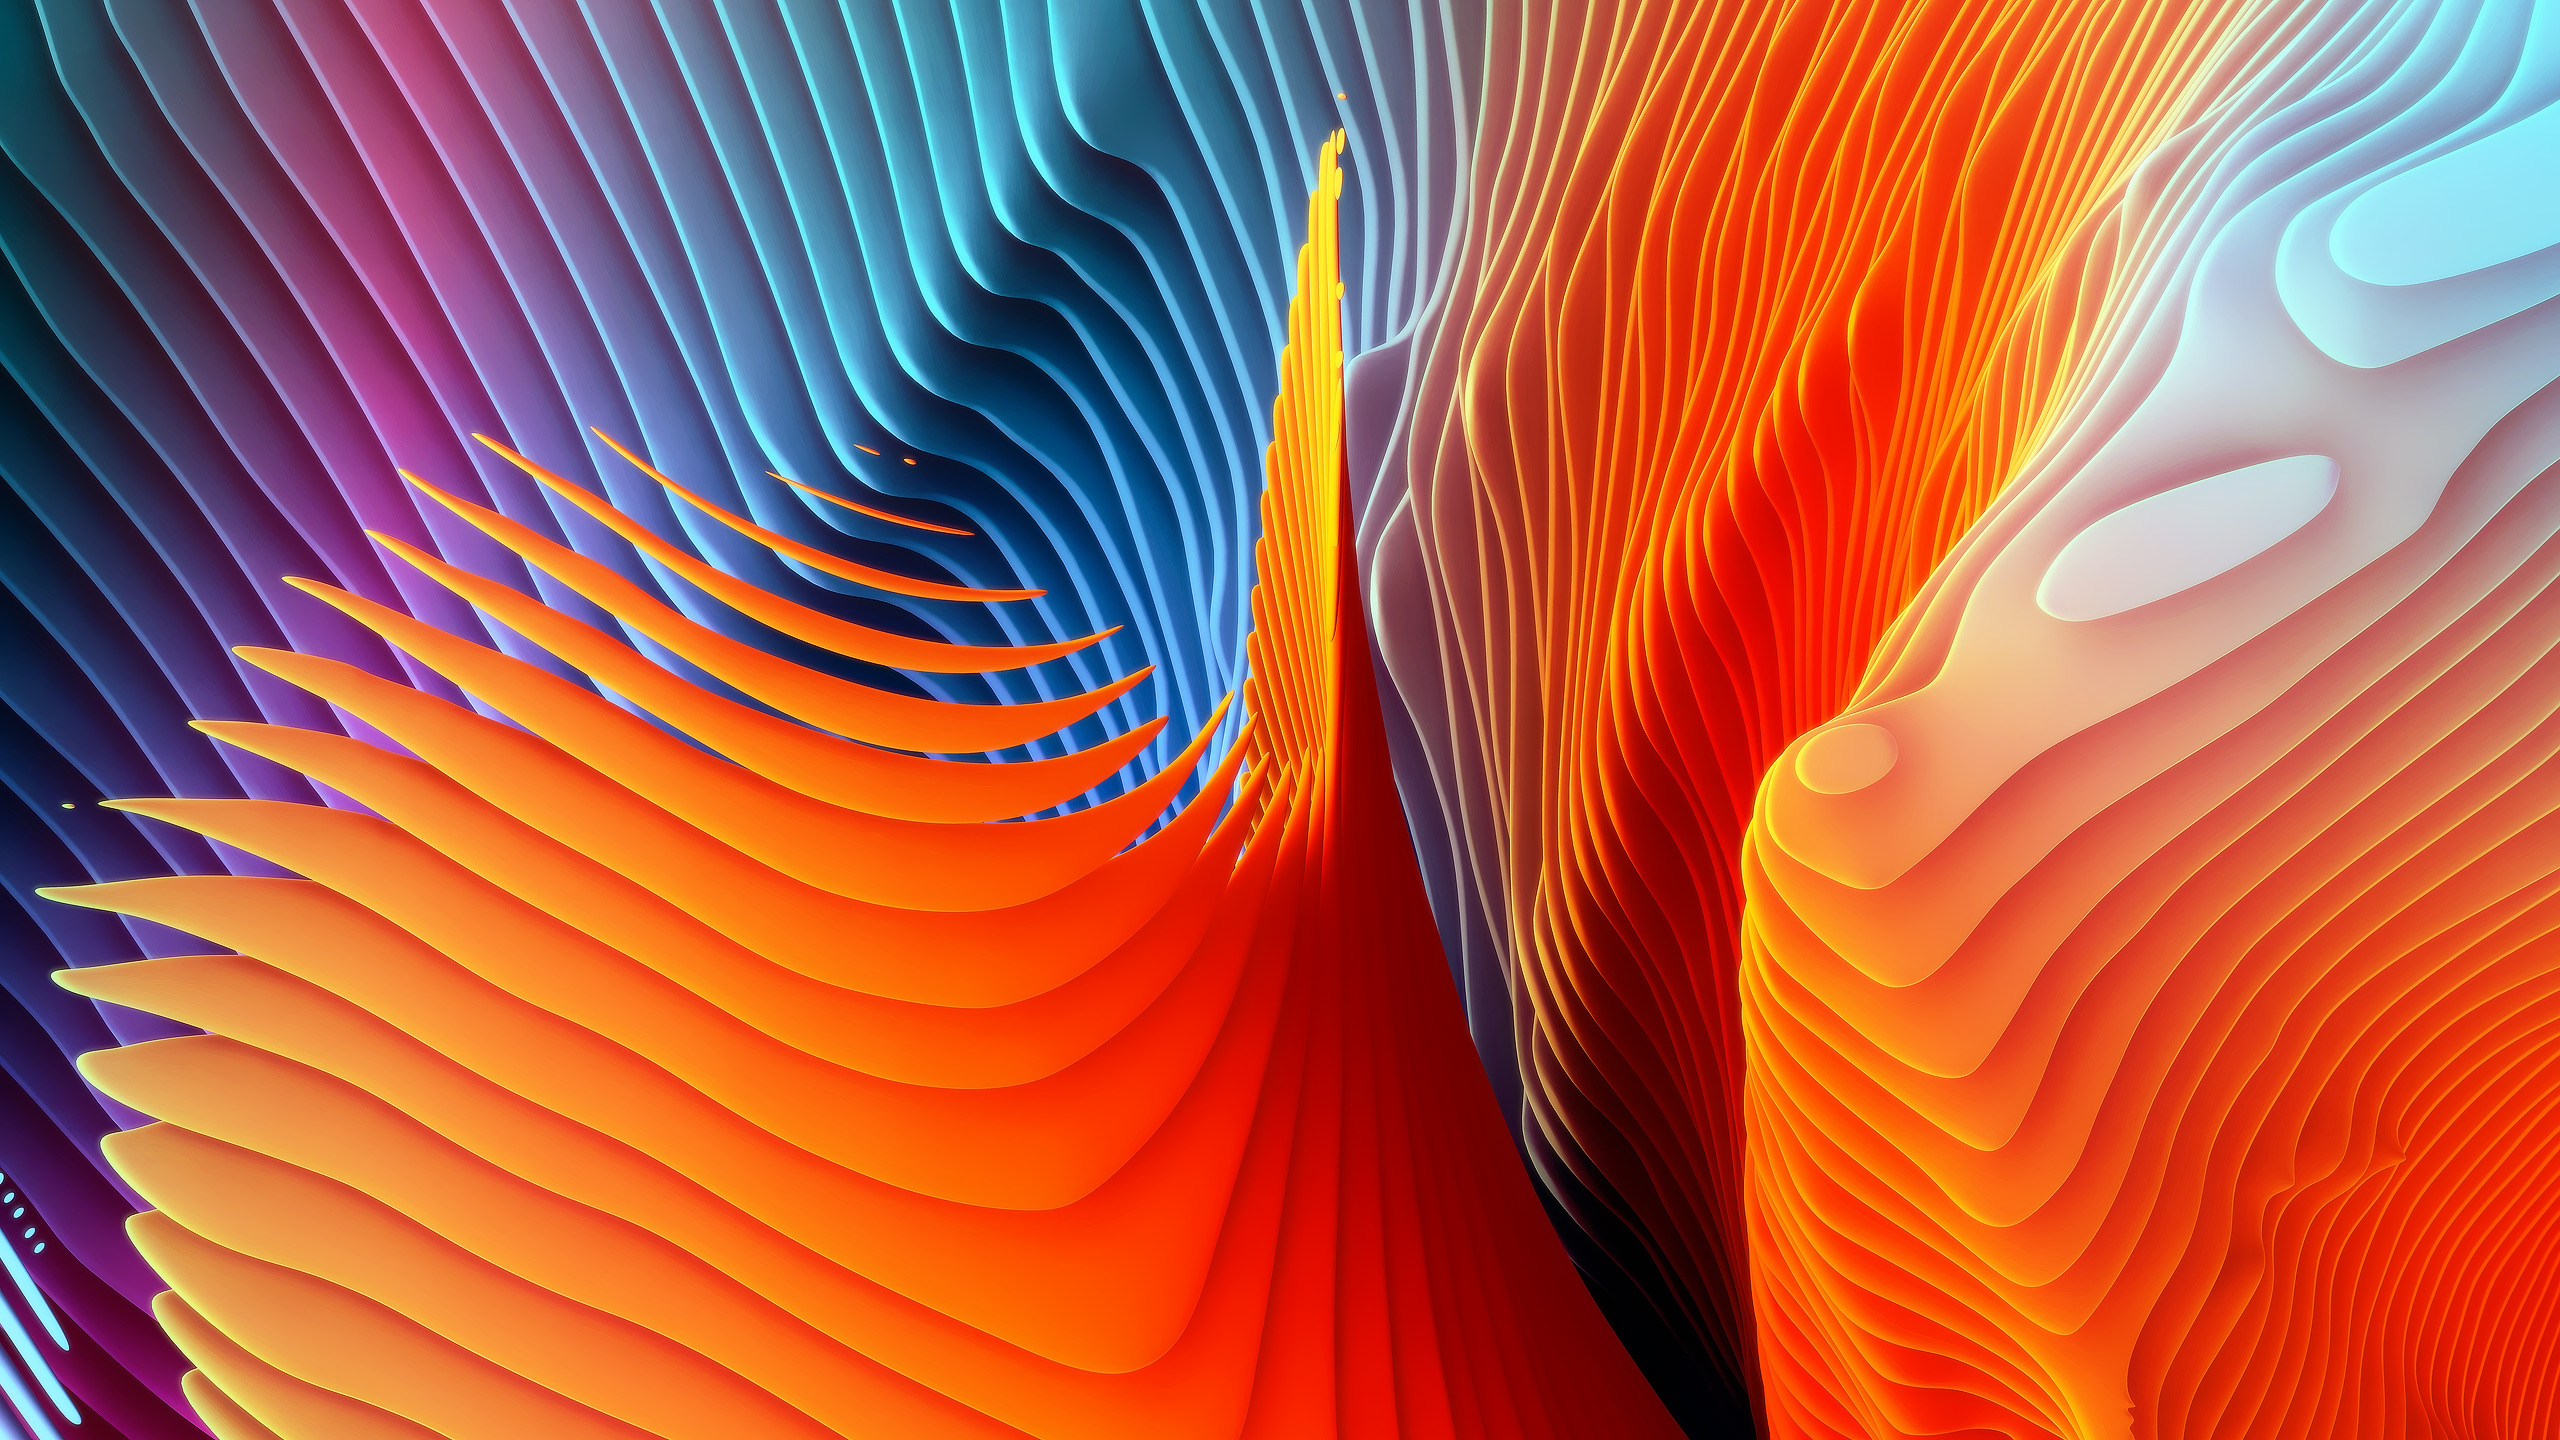 Yeni MacBook Pro’nun rengarenk duvar kağıtlarını indirin